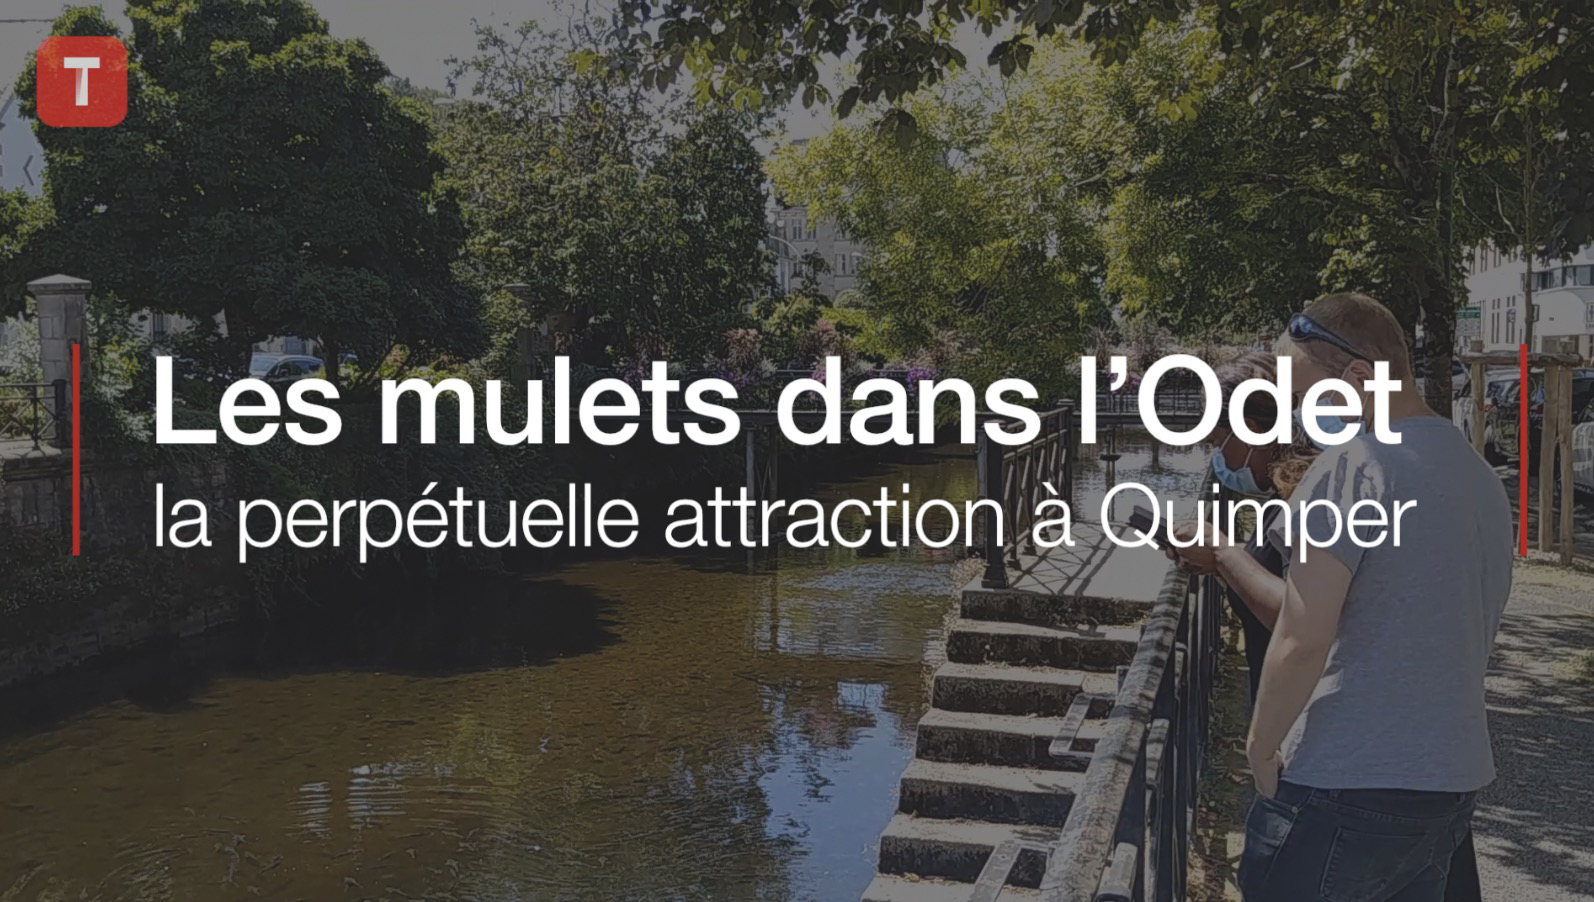 Les mulets dans l’Odet, la perpétuelle attraction à Quimper (Le Télégramme)